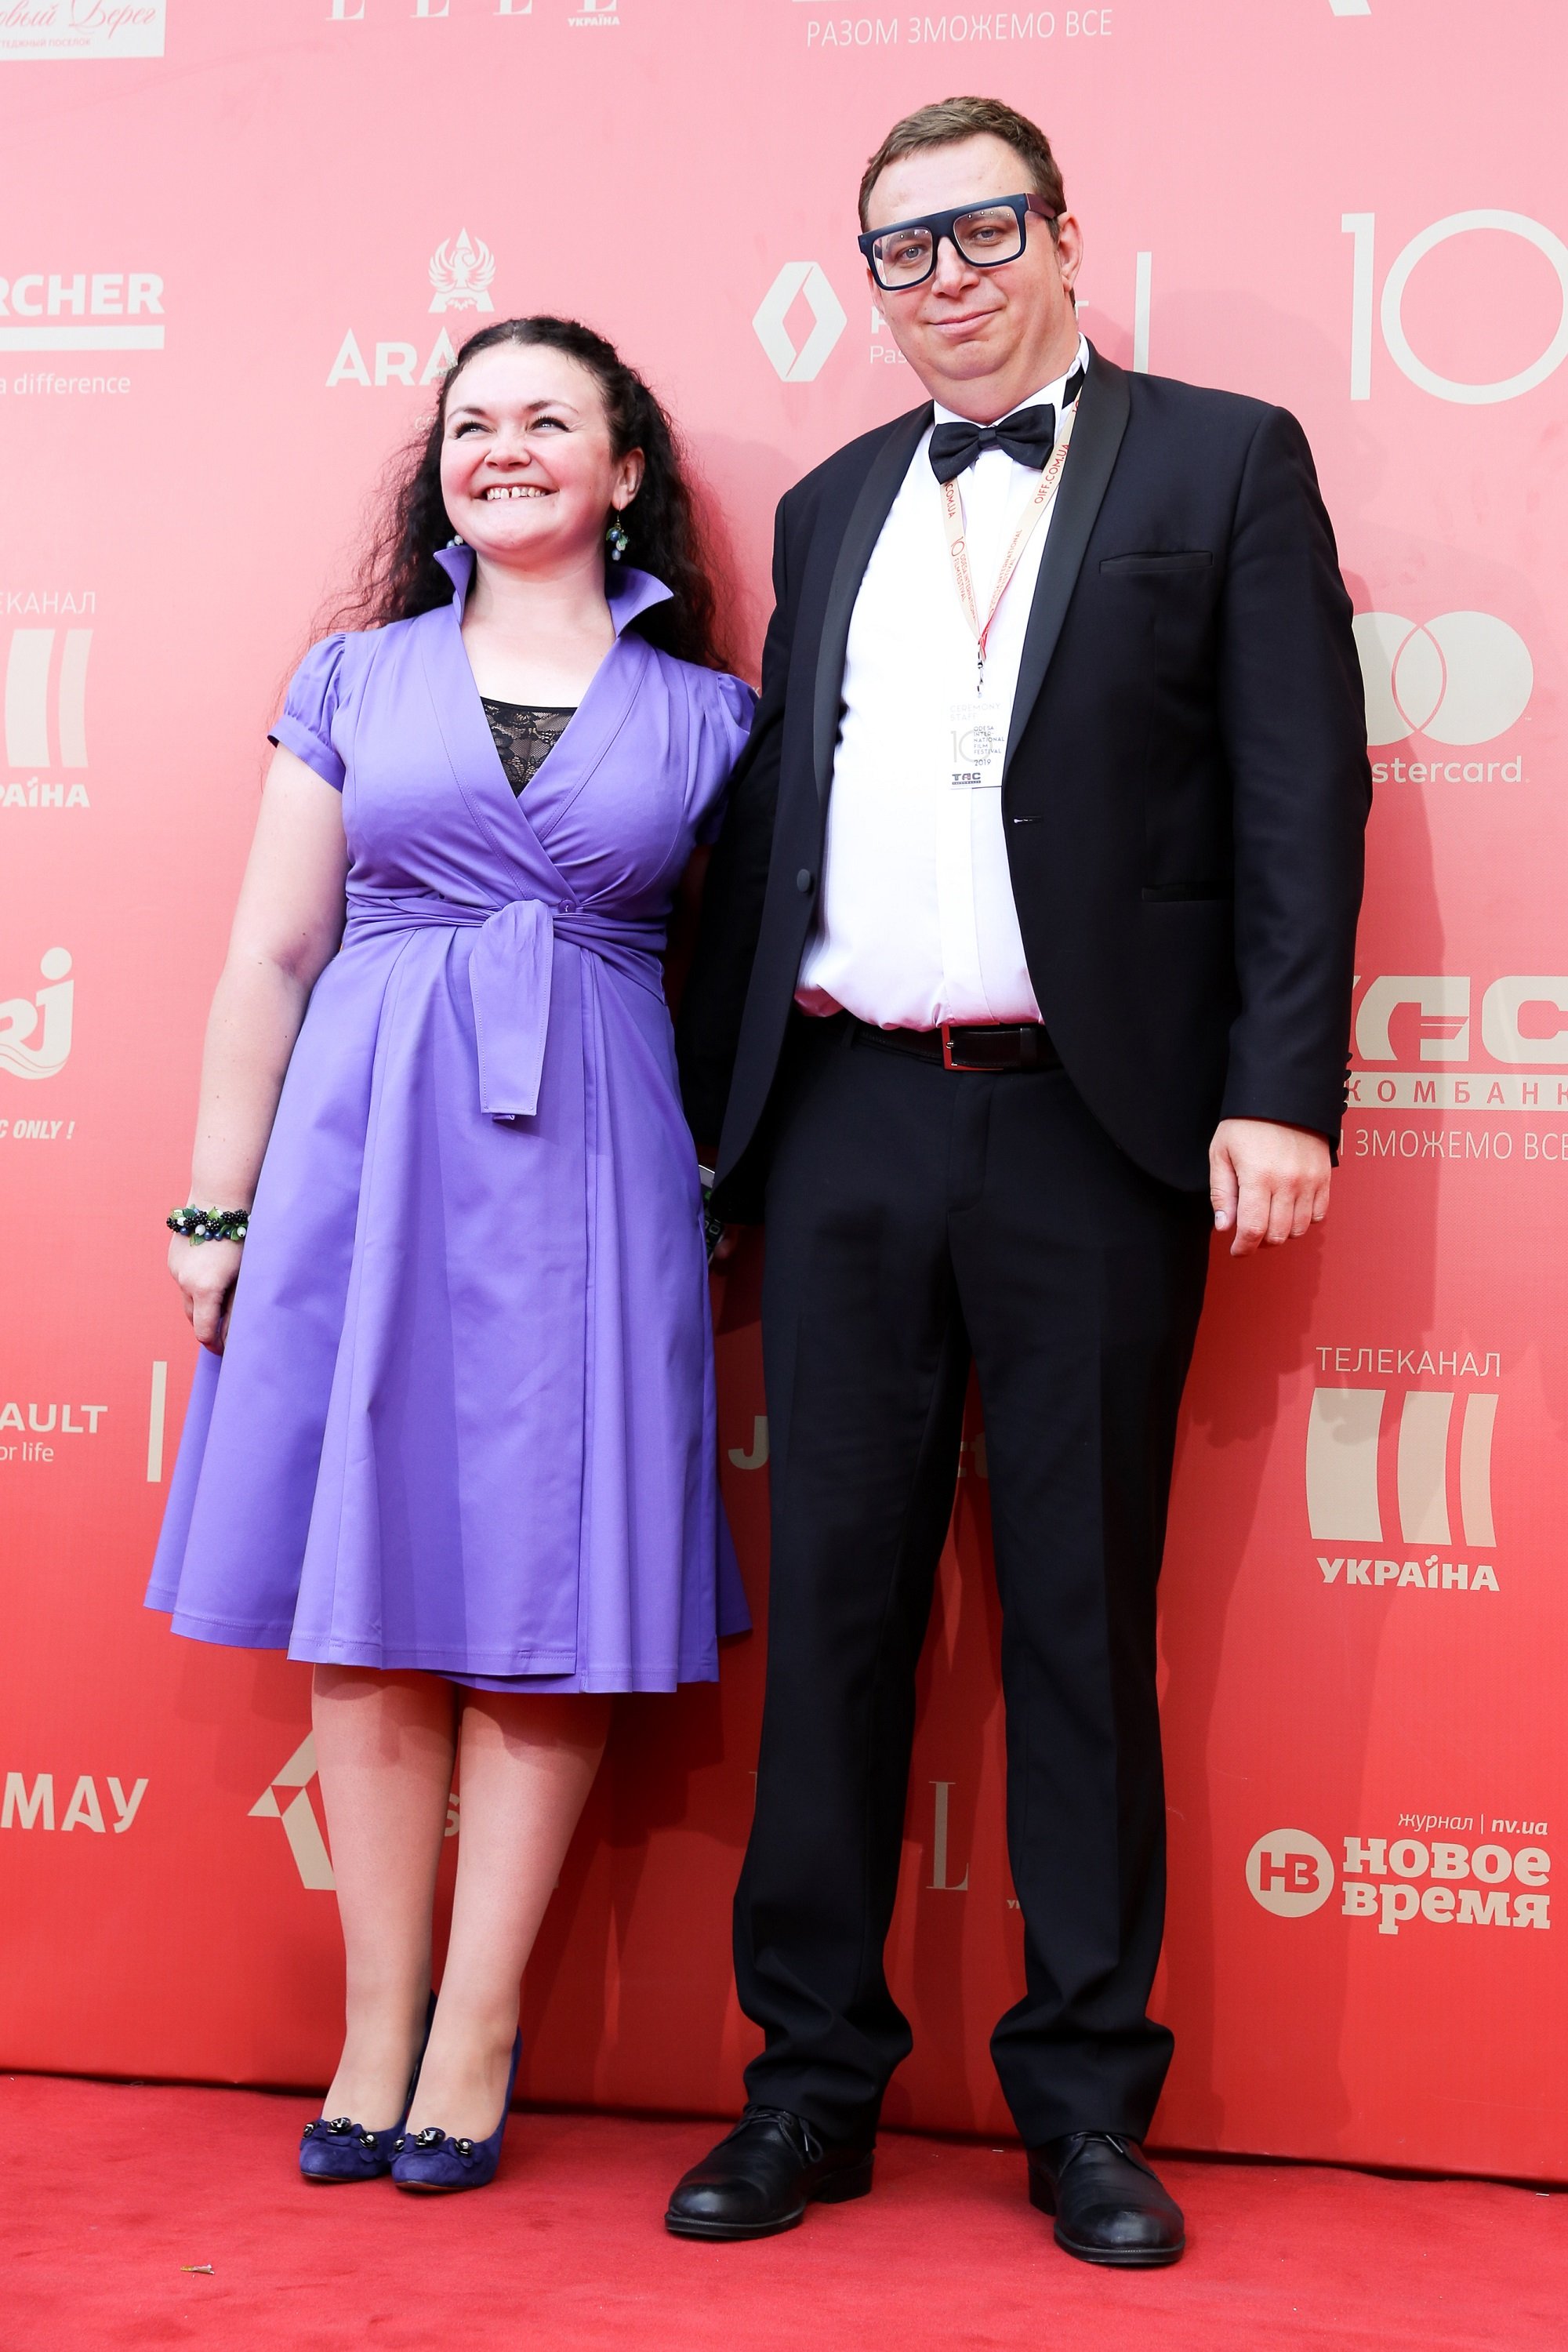 Червона доріжка Одеського кінофестивалю 2019 - фото 442027